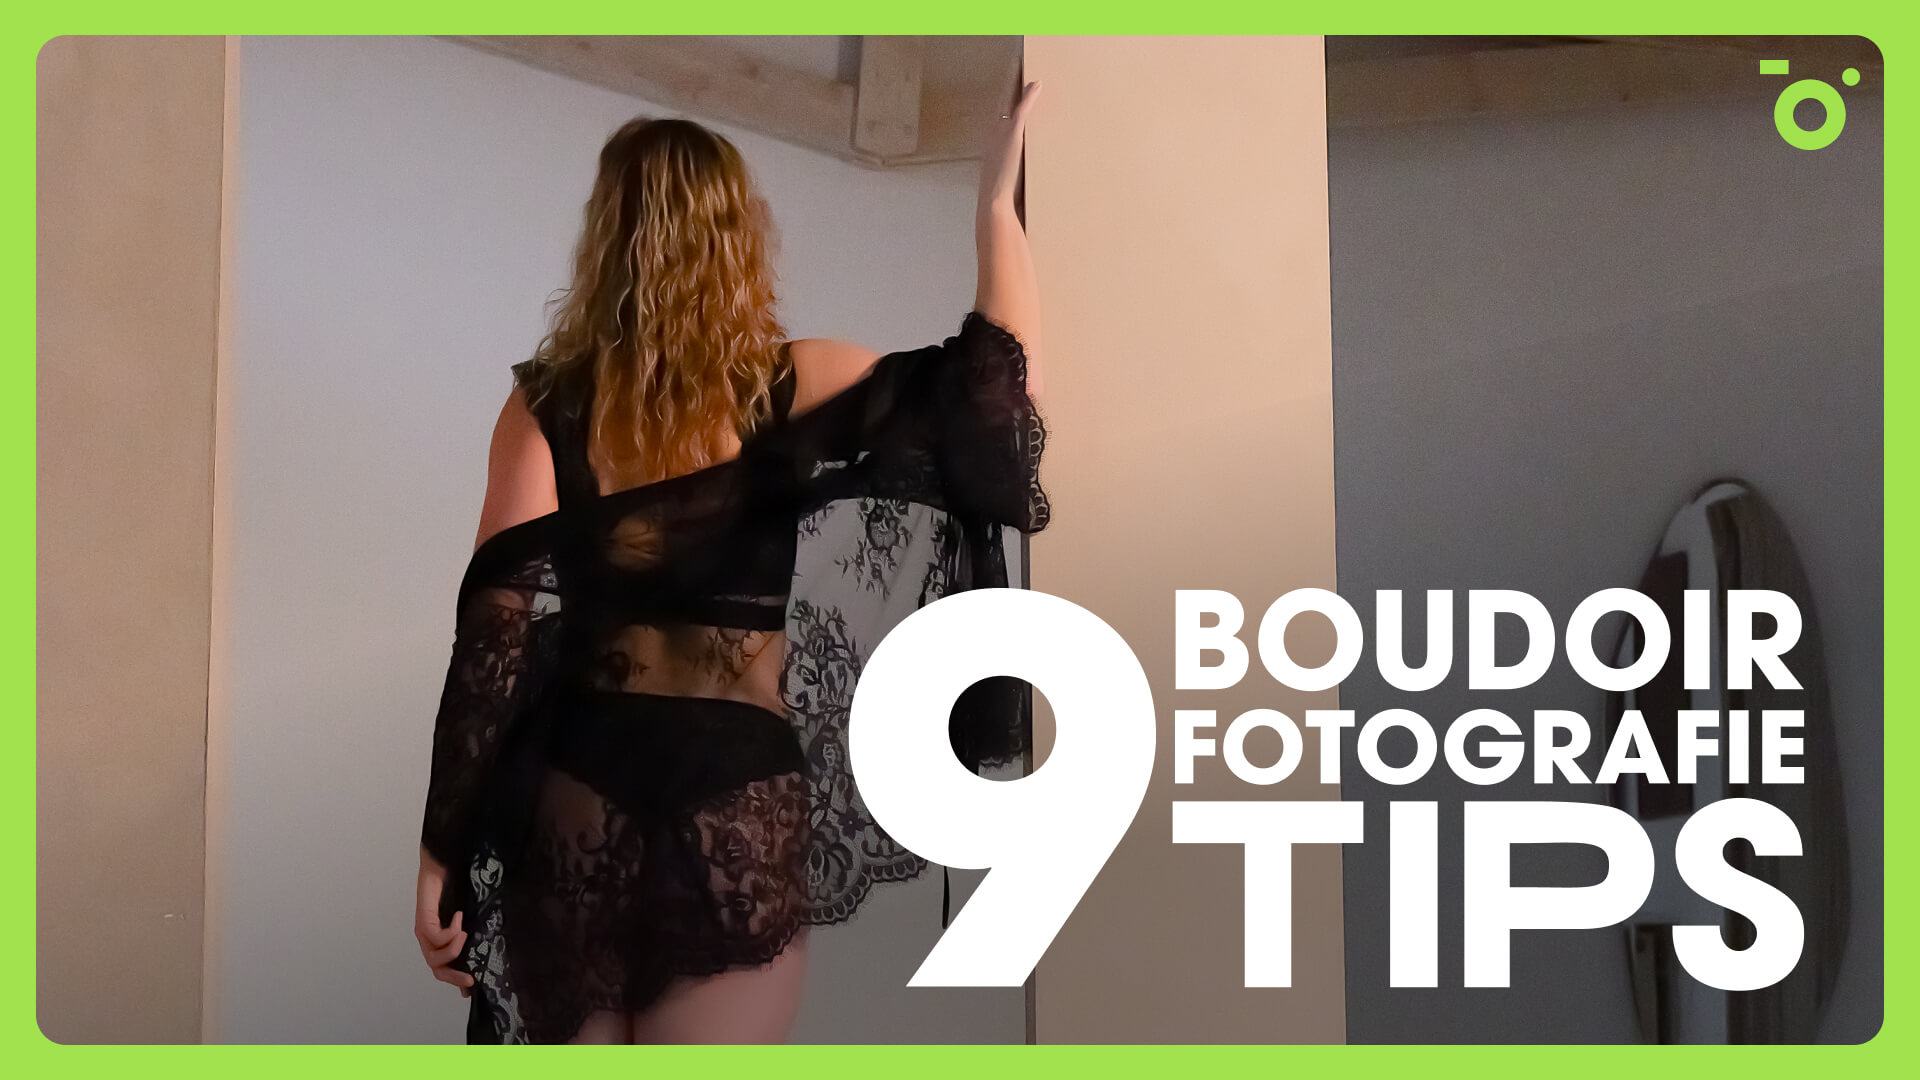 Fotograaf Harm van Alst deelt 9 tips voor het maken van prachtige boudoirfoto's | Tips